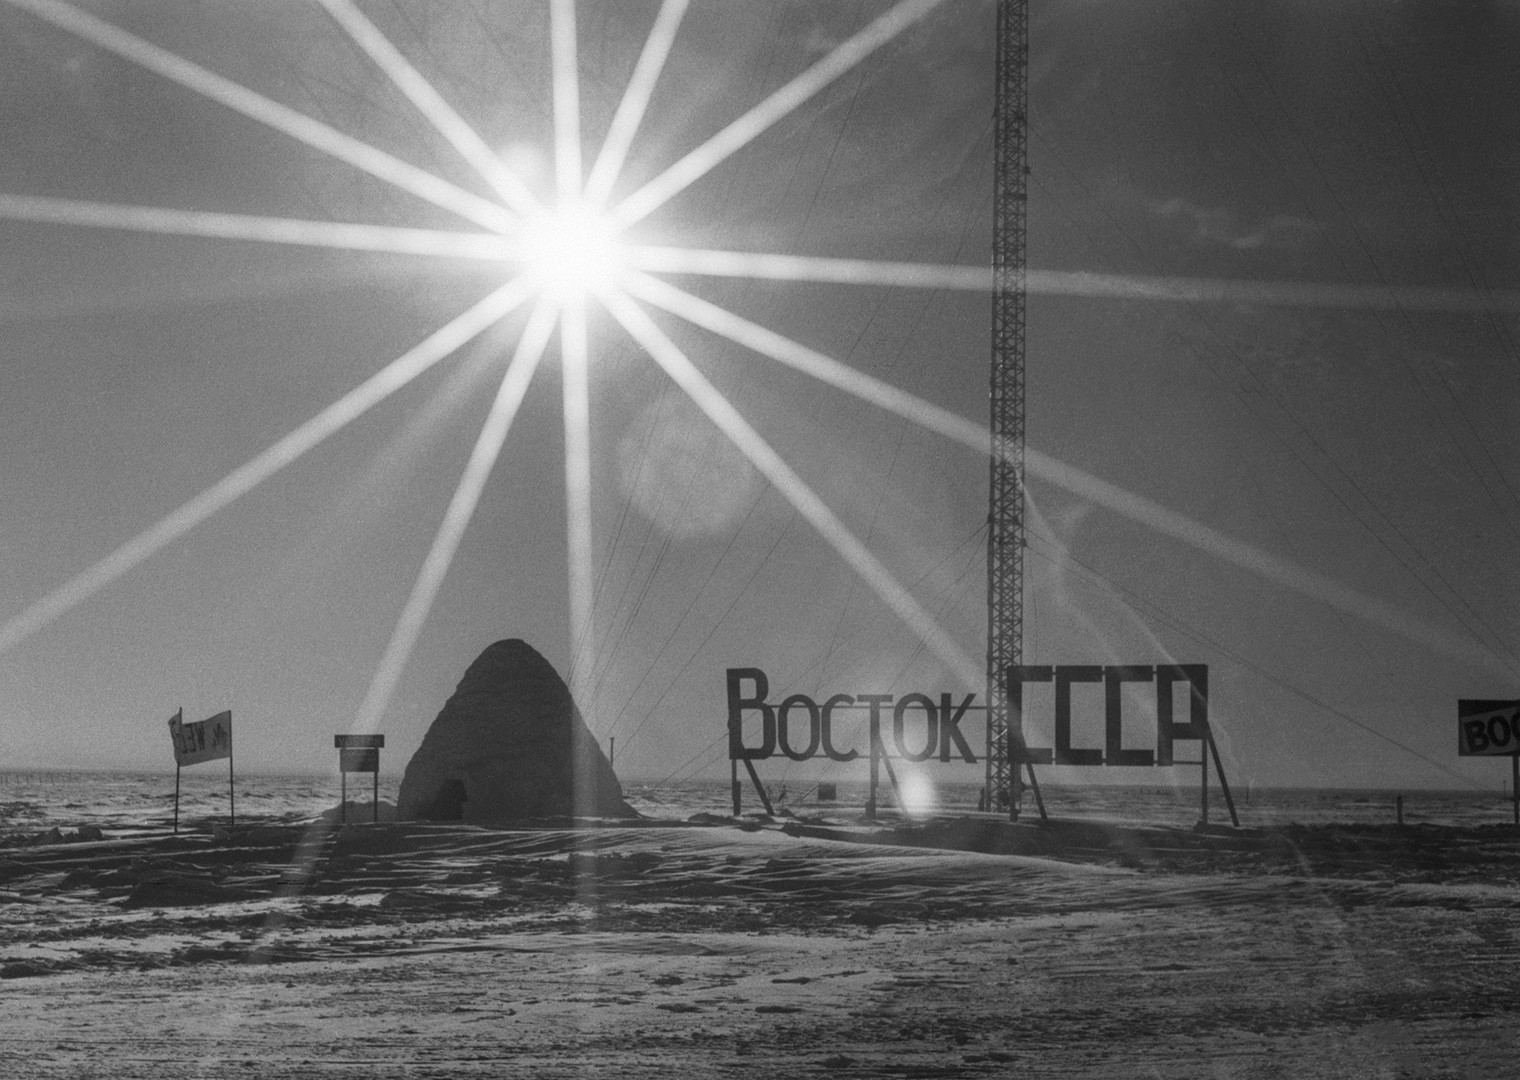 La estación rusa Vostok en la Antártida, 1994.